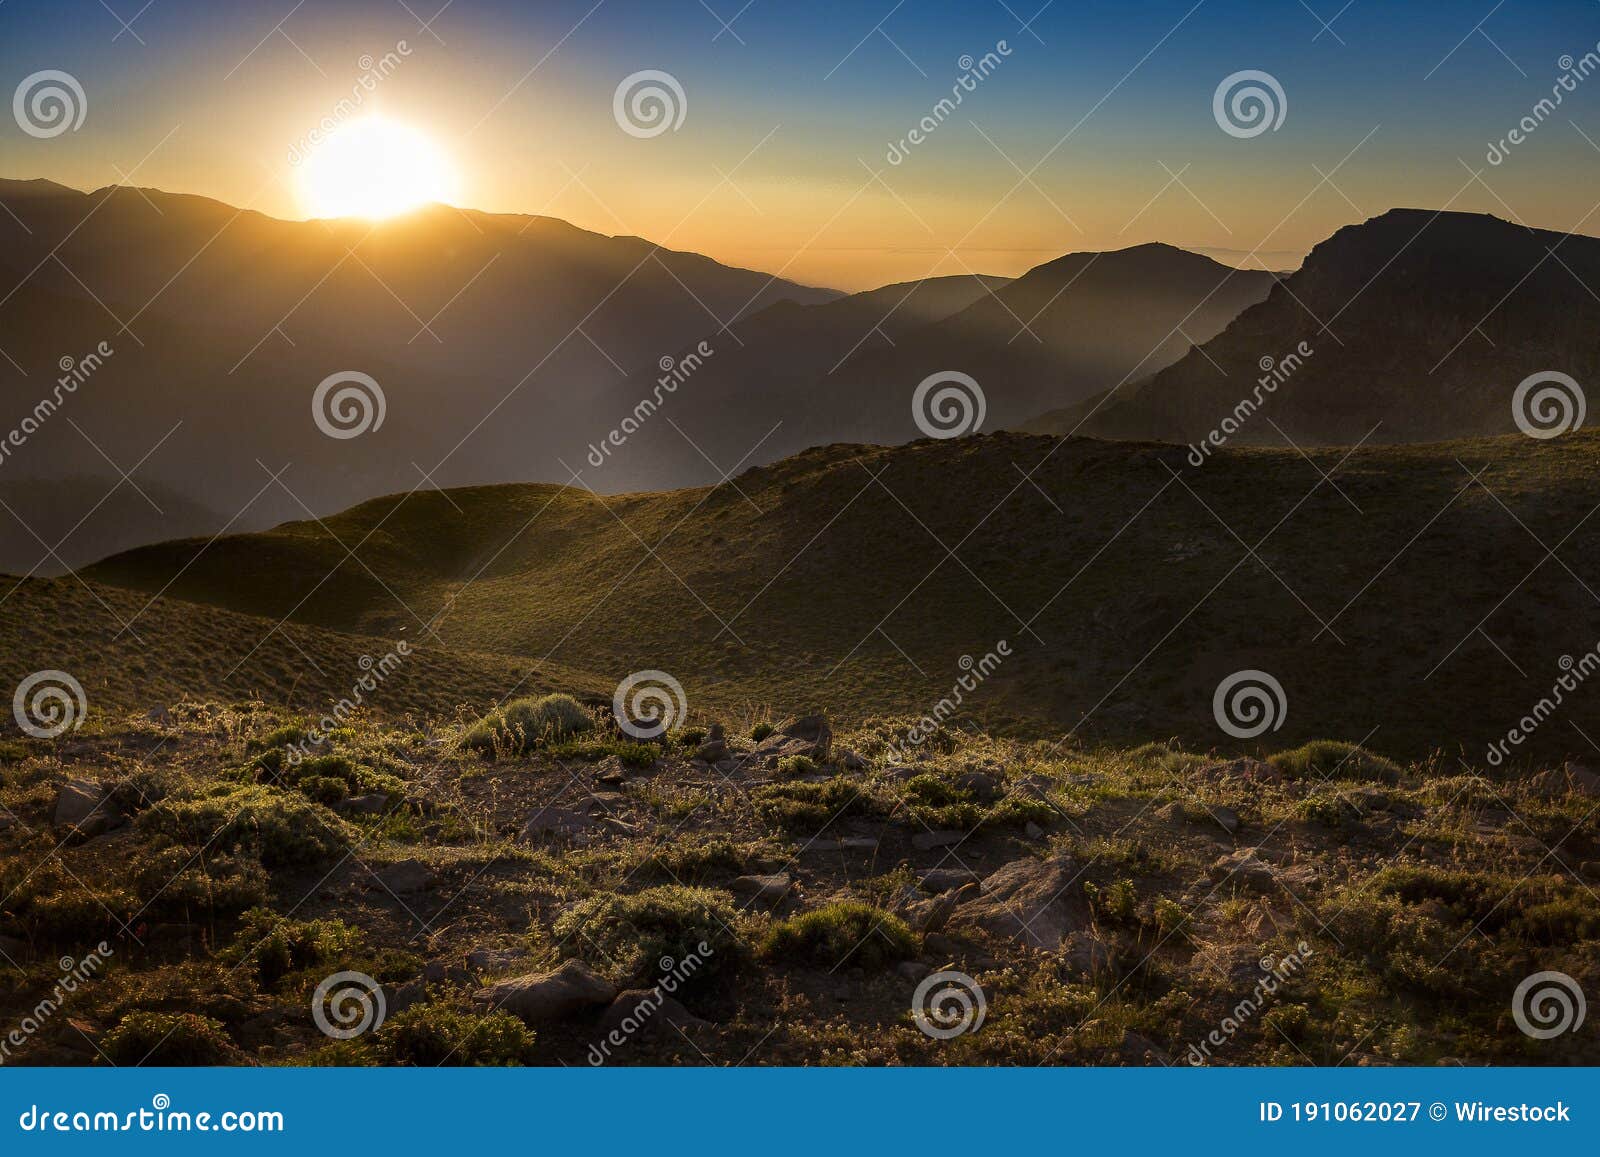 puesta de sol entre las montaÃÂ±as de la cordillera de los andes